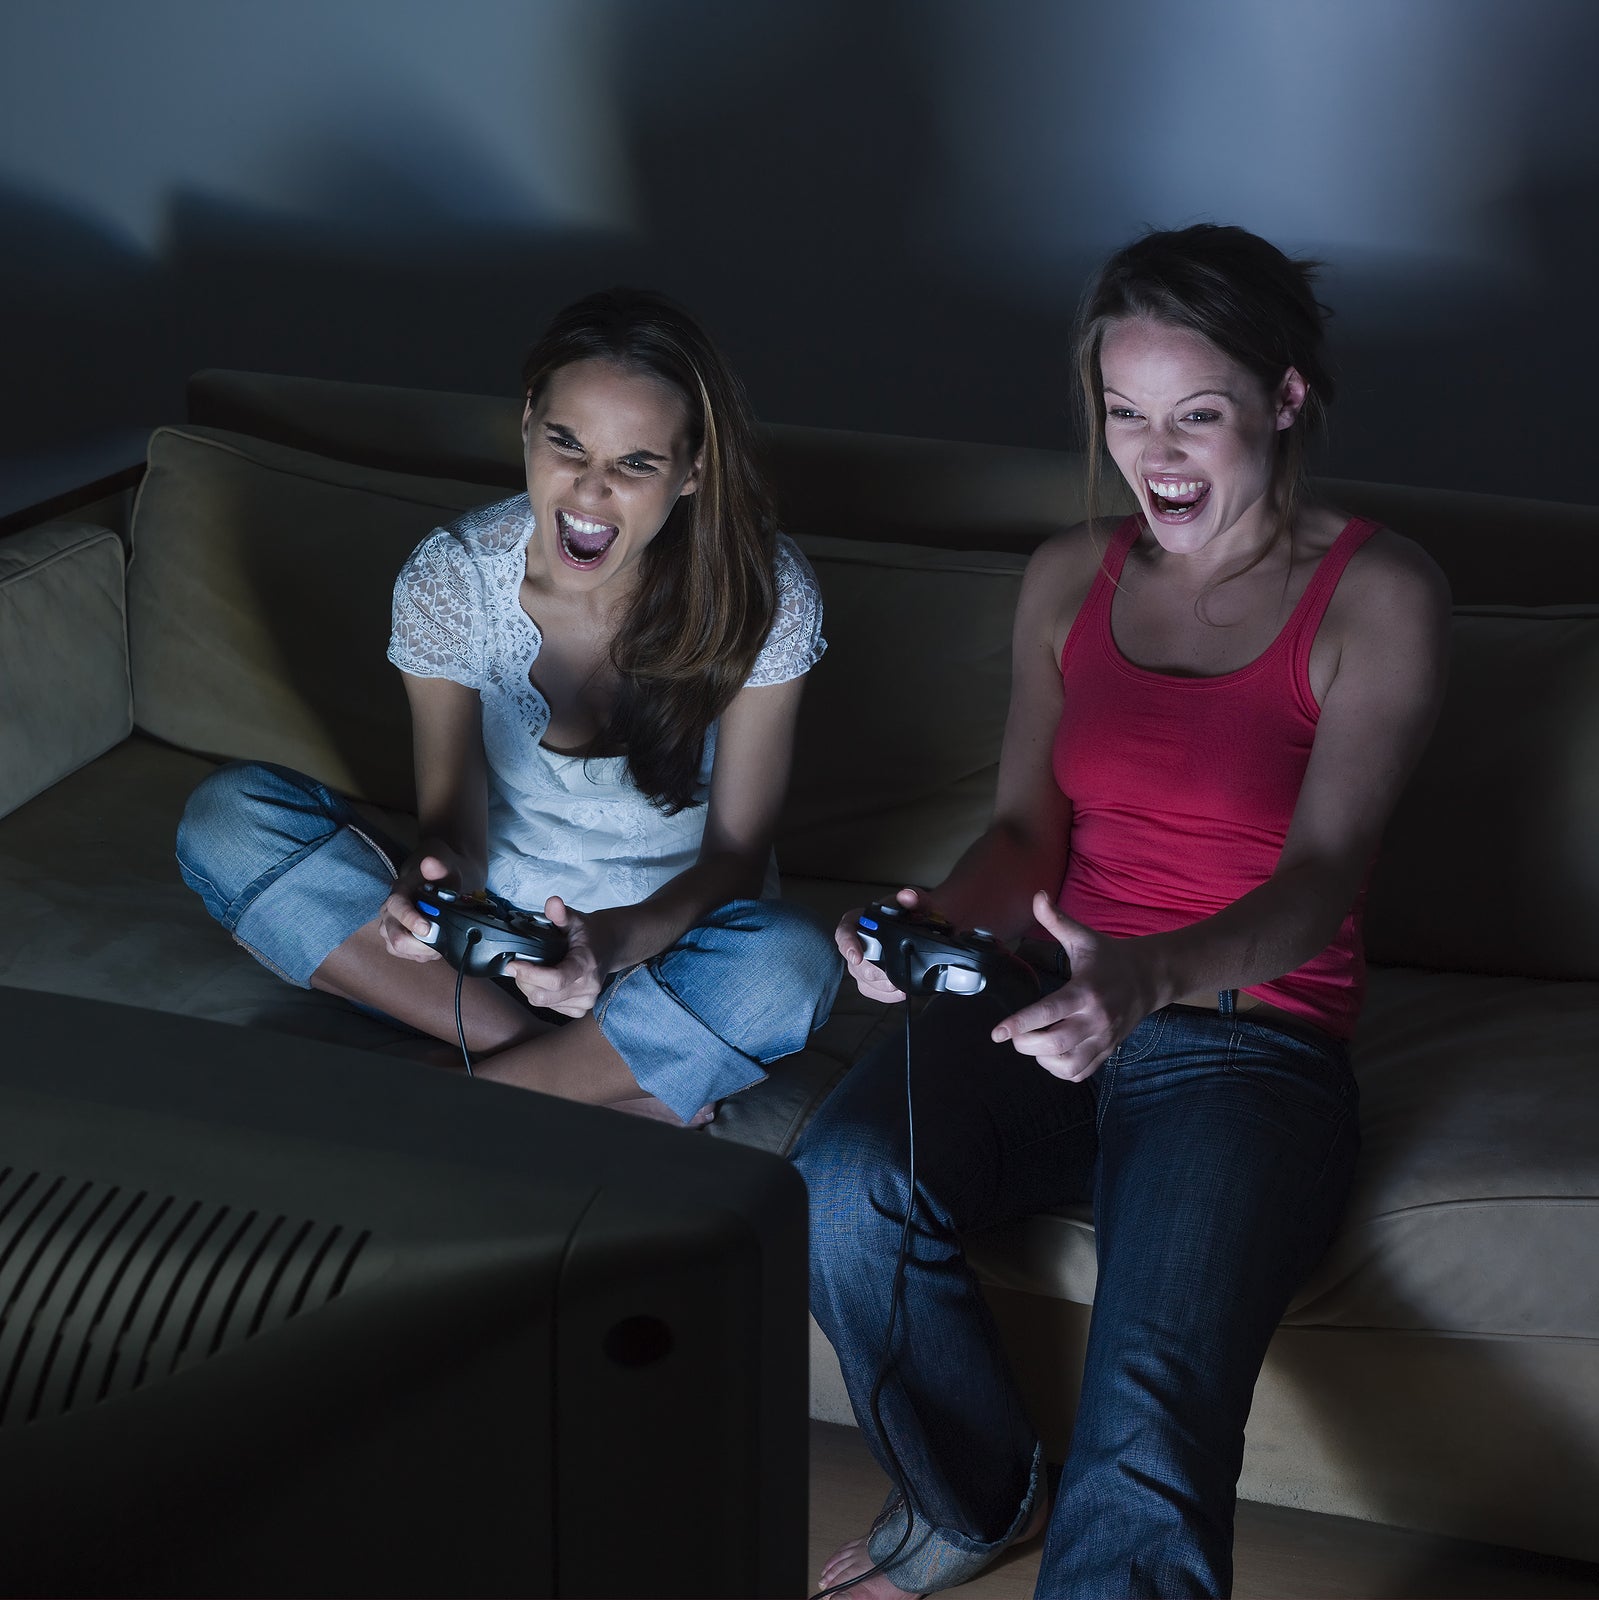 Рот сидеть видео. Фото лица девушек как они играют в Видеоигры. Парень и девушка играют в Видеоигры. Смотрит как девушка играет. Во что могут поиграть девочки в квартире.